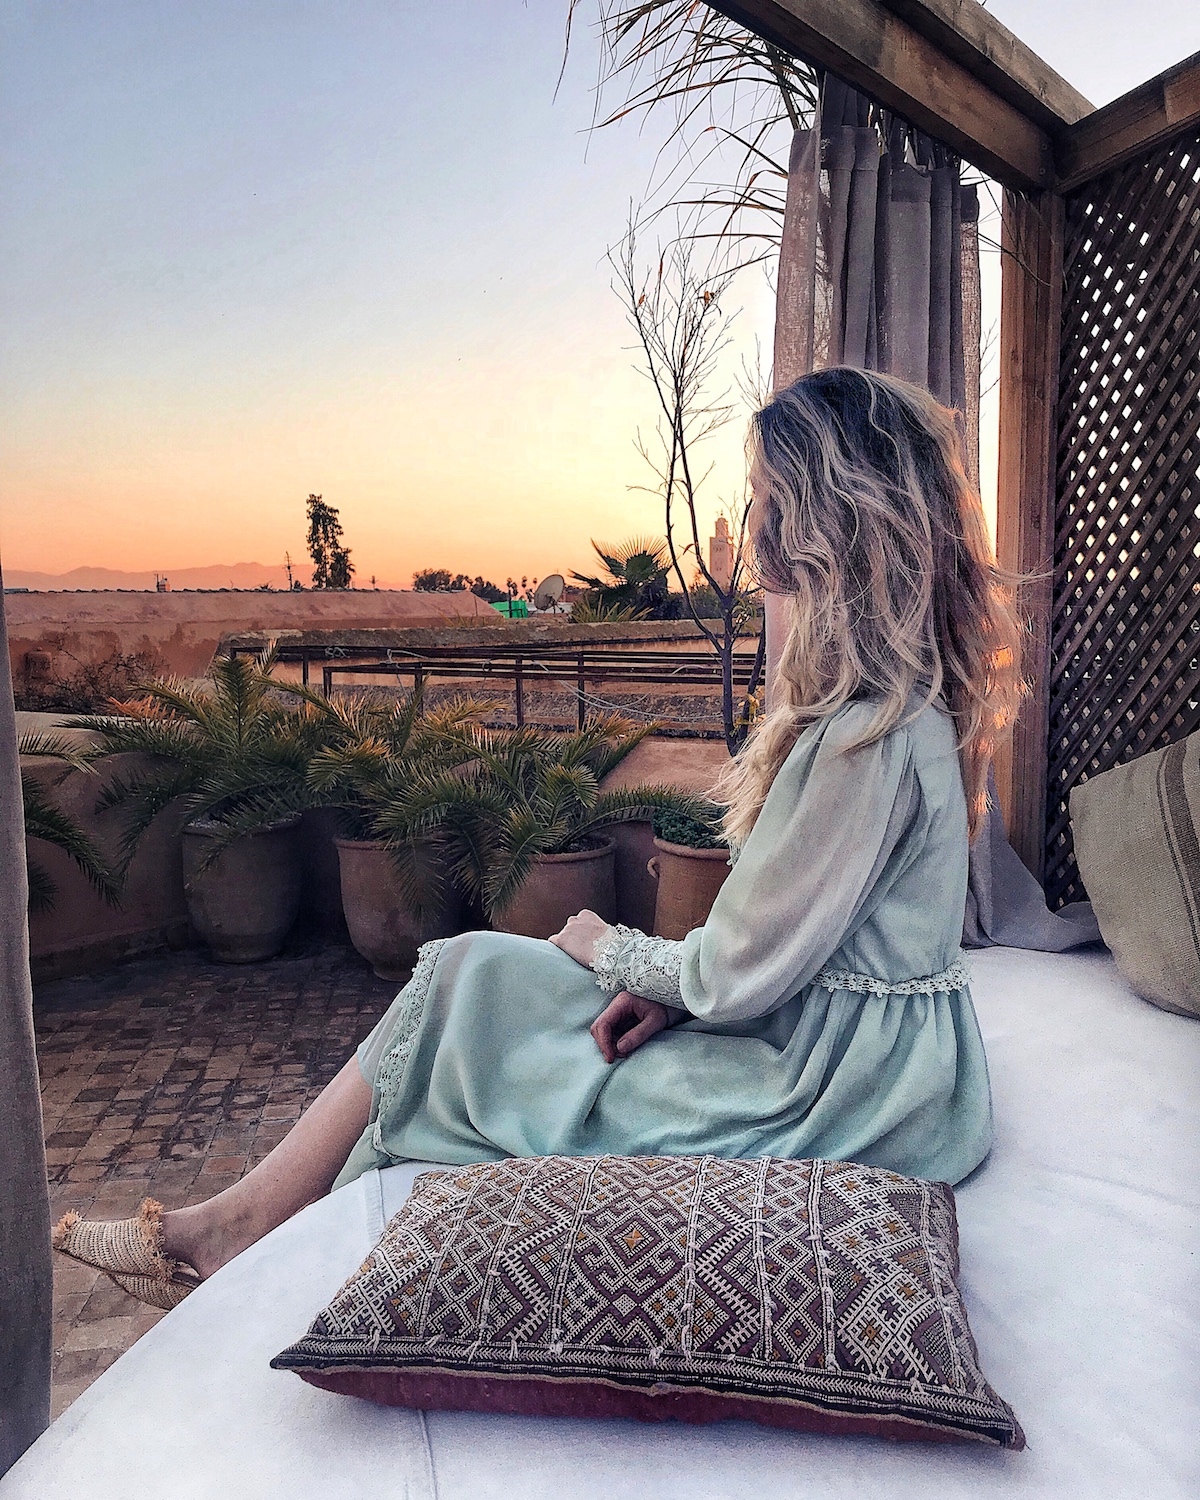 Marrakesch schönste Riads preiswerte fotogene Riads Instagram Travel Diary TheBlondeLion Erfahrungsbericht Riad O2 Riad Amira Riad Jardin Secret Riad K mehr auf http://www.theblondelion.com/2018/03/schone-preiswerte-riads-marrakesch.html